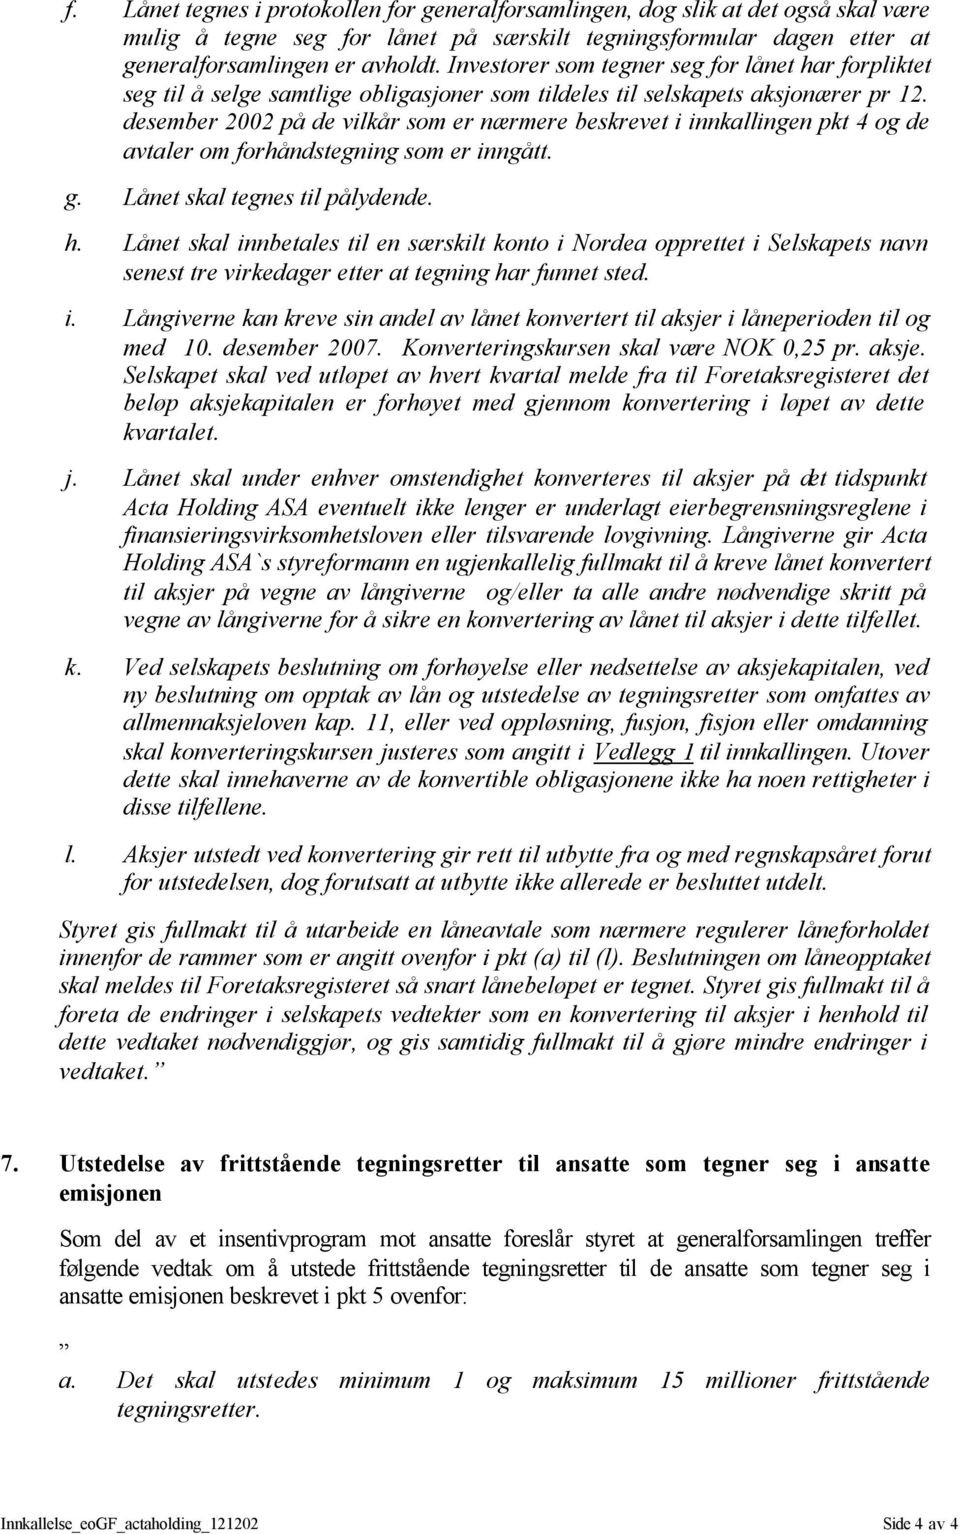 desember 2002 på de vilkår som er nærmere beskrevet i innkallingen pkt 4 og de avtaler om forhåndstegning som er inngått. g. Lånet skal tegnes til pålydende. h.